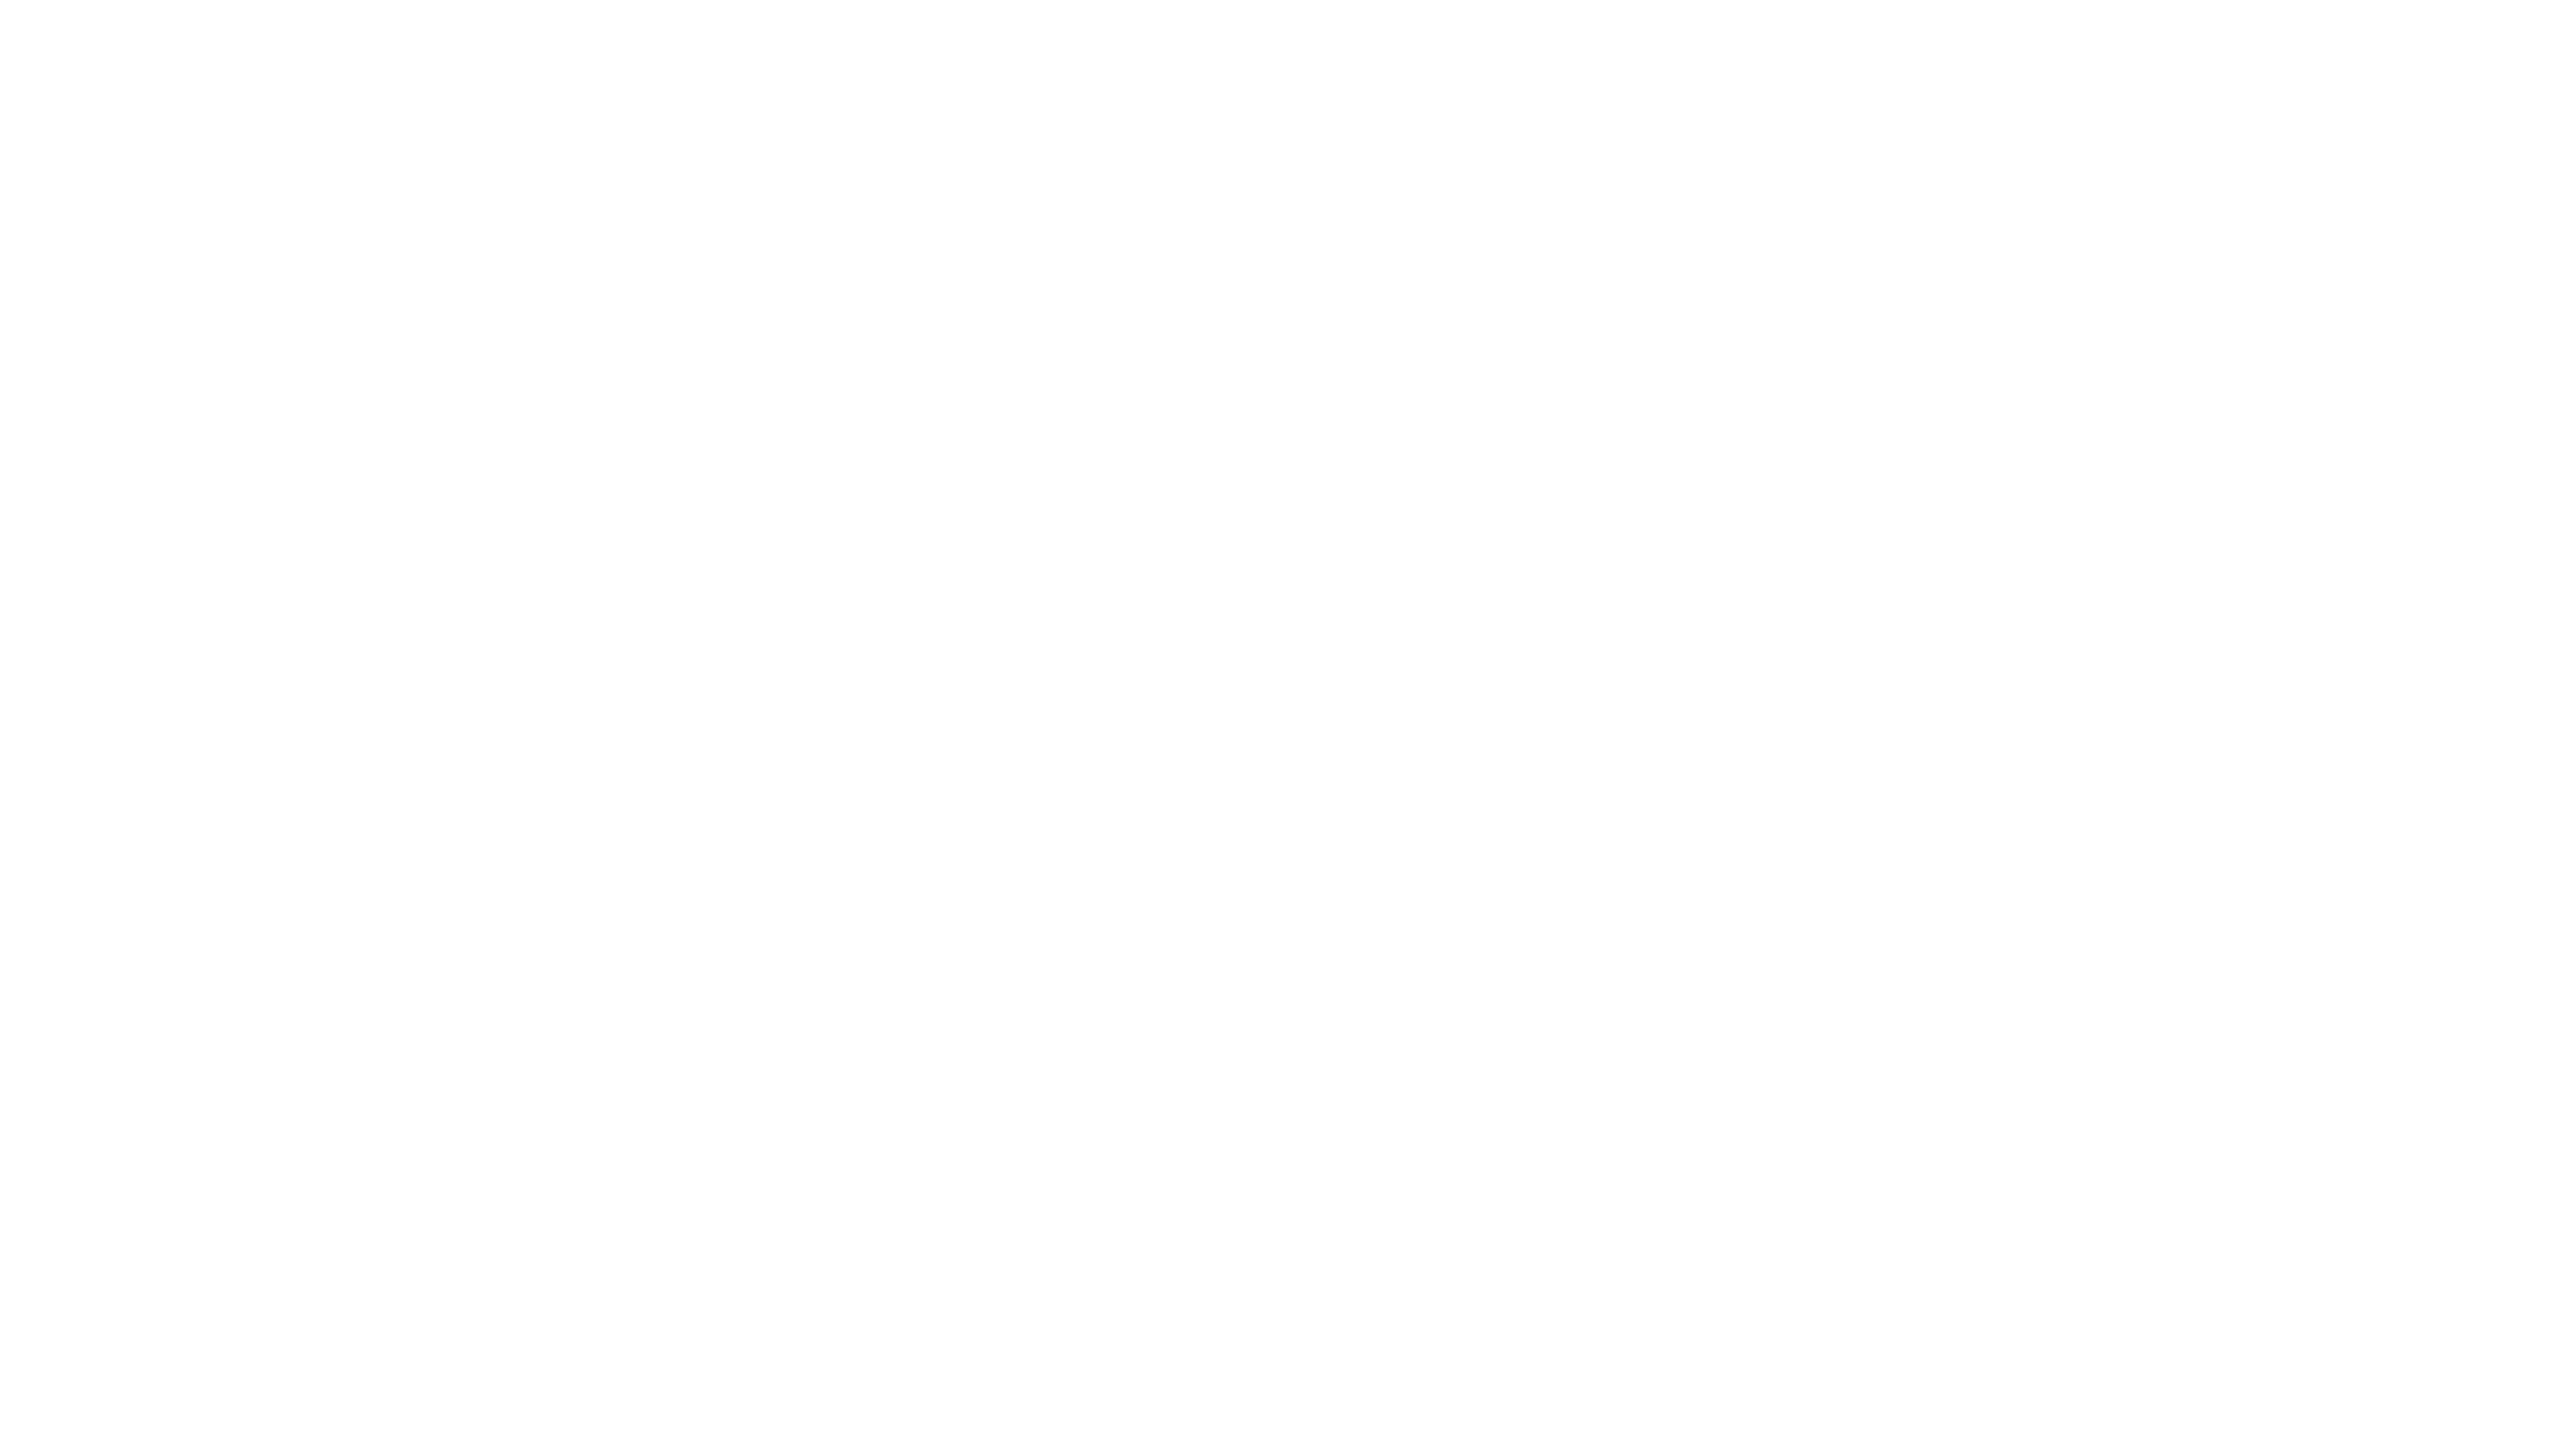 京セラOA機器取扱店 静岡県下販売実績No.1